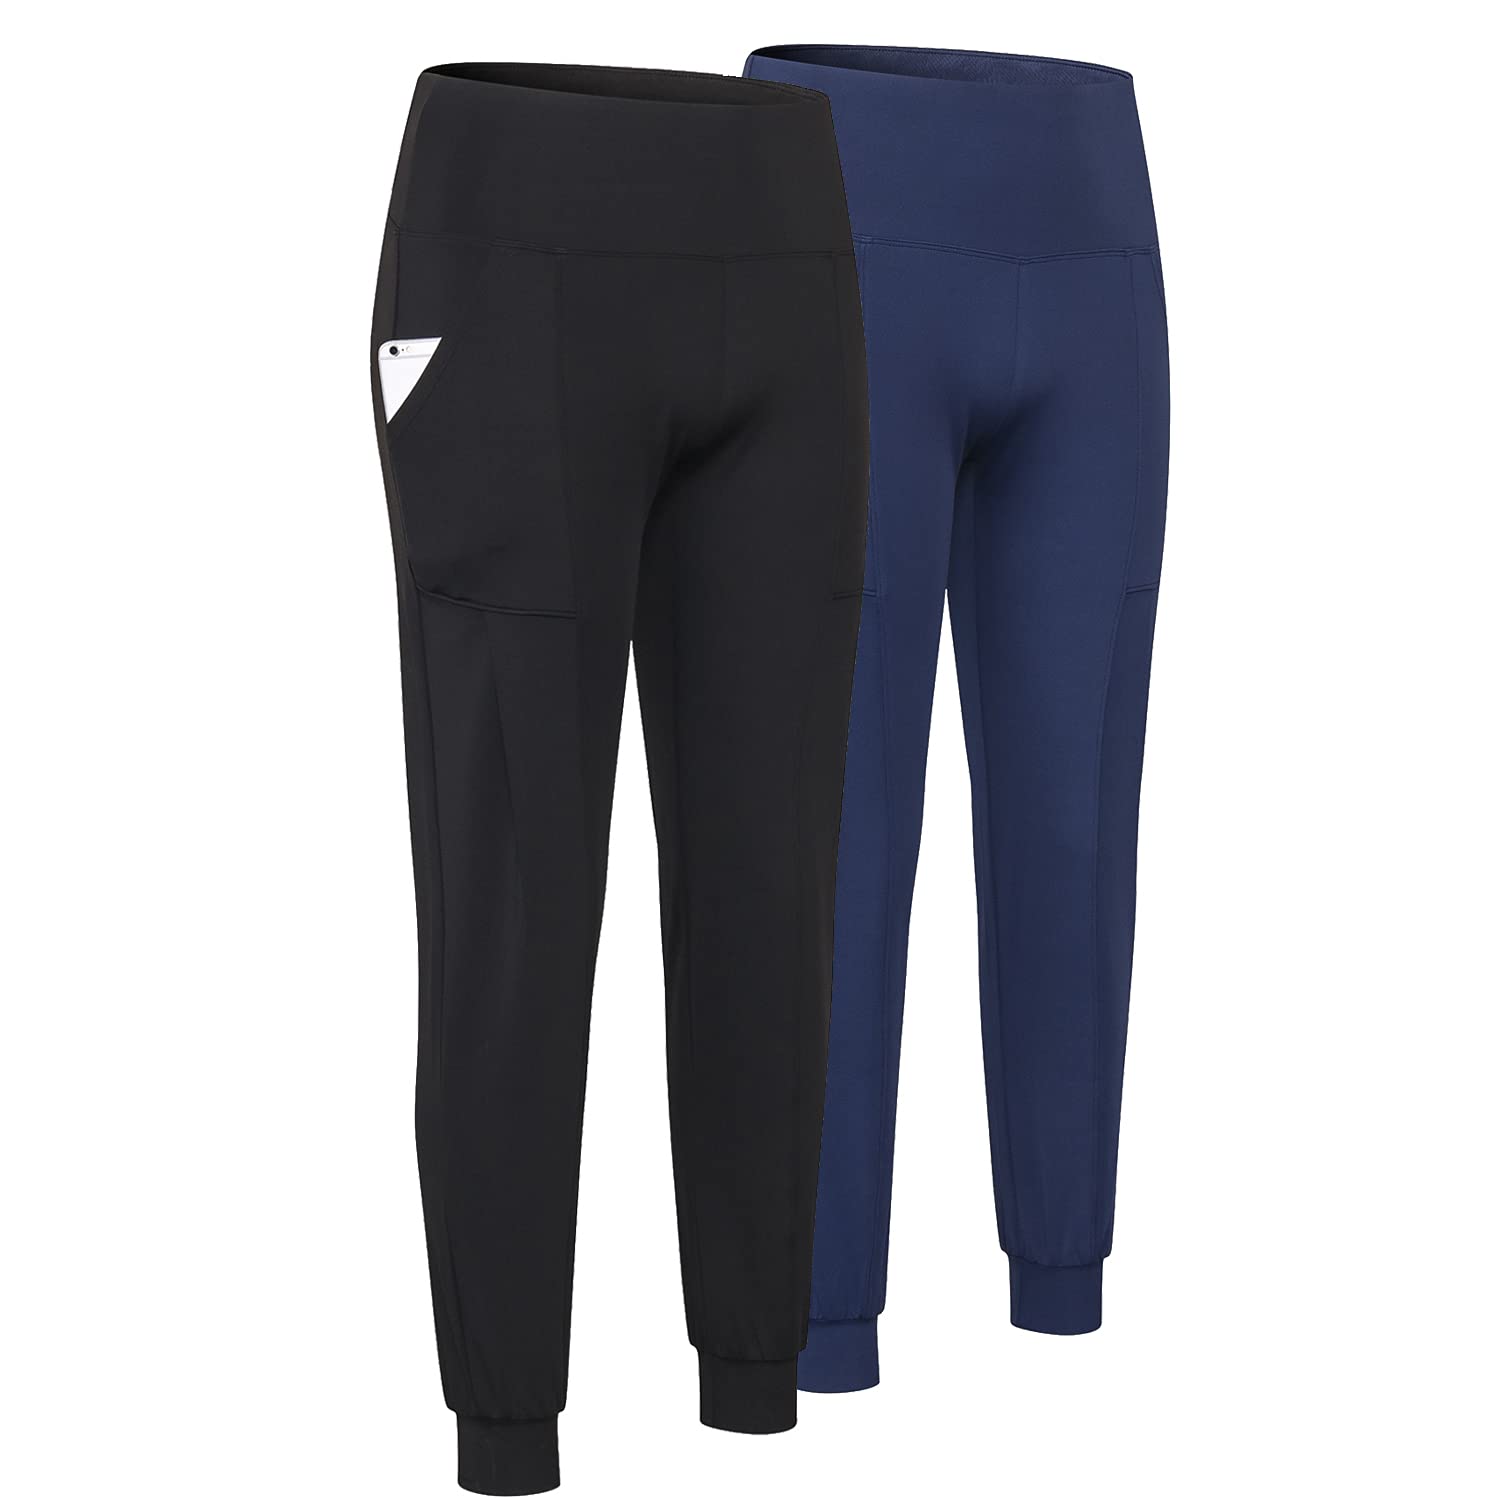 Penmans Athleisure, Pants & Jumpsuits, Athleisure Dark Blue Pants Size Women  Xl